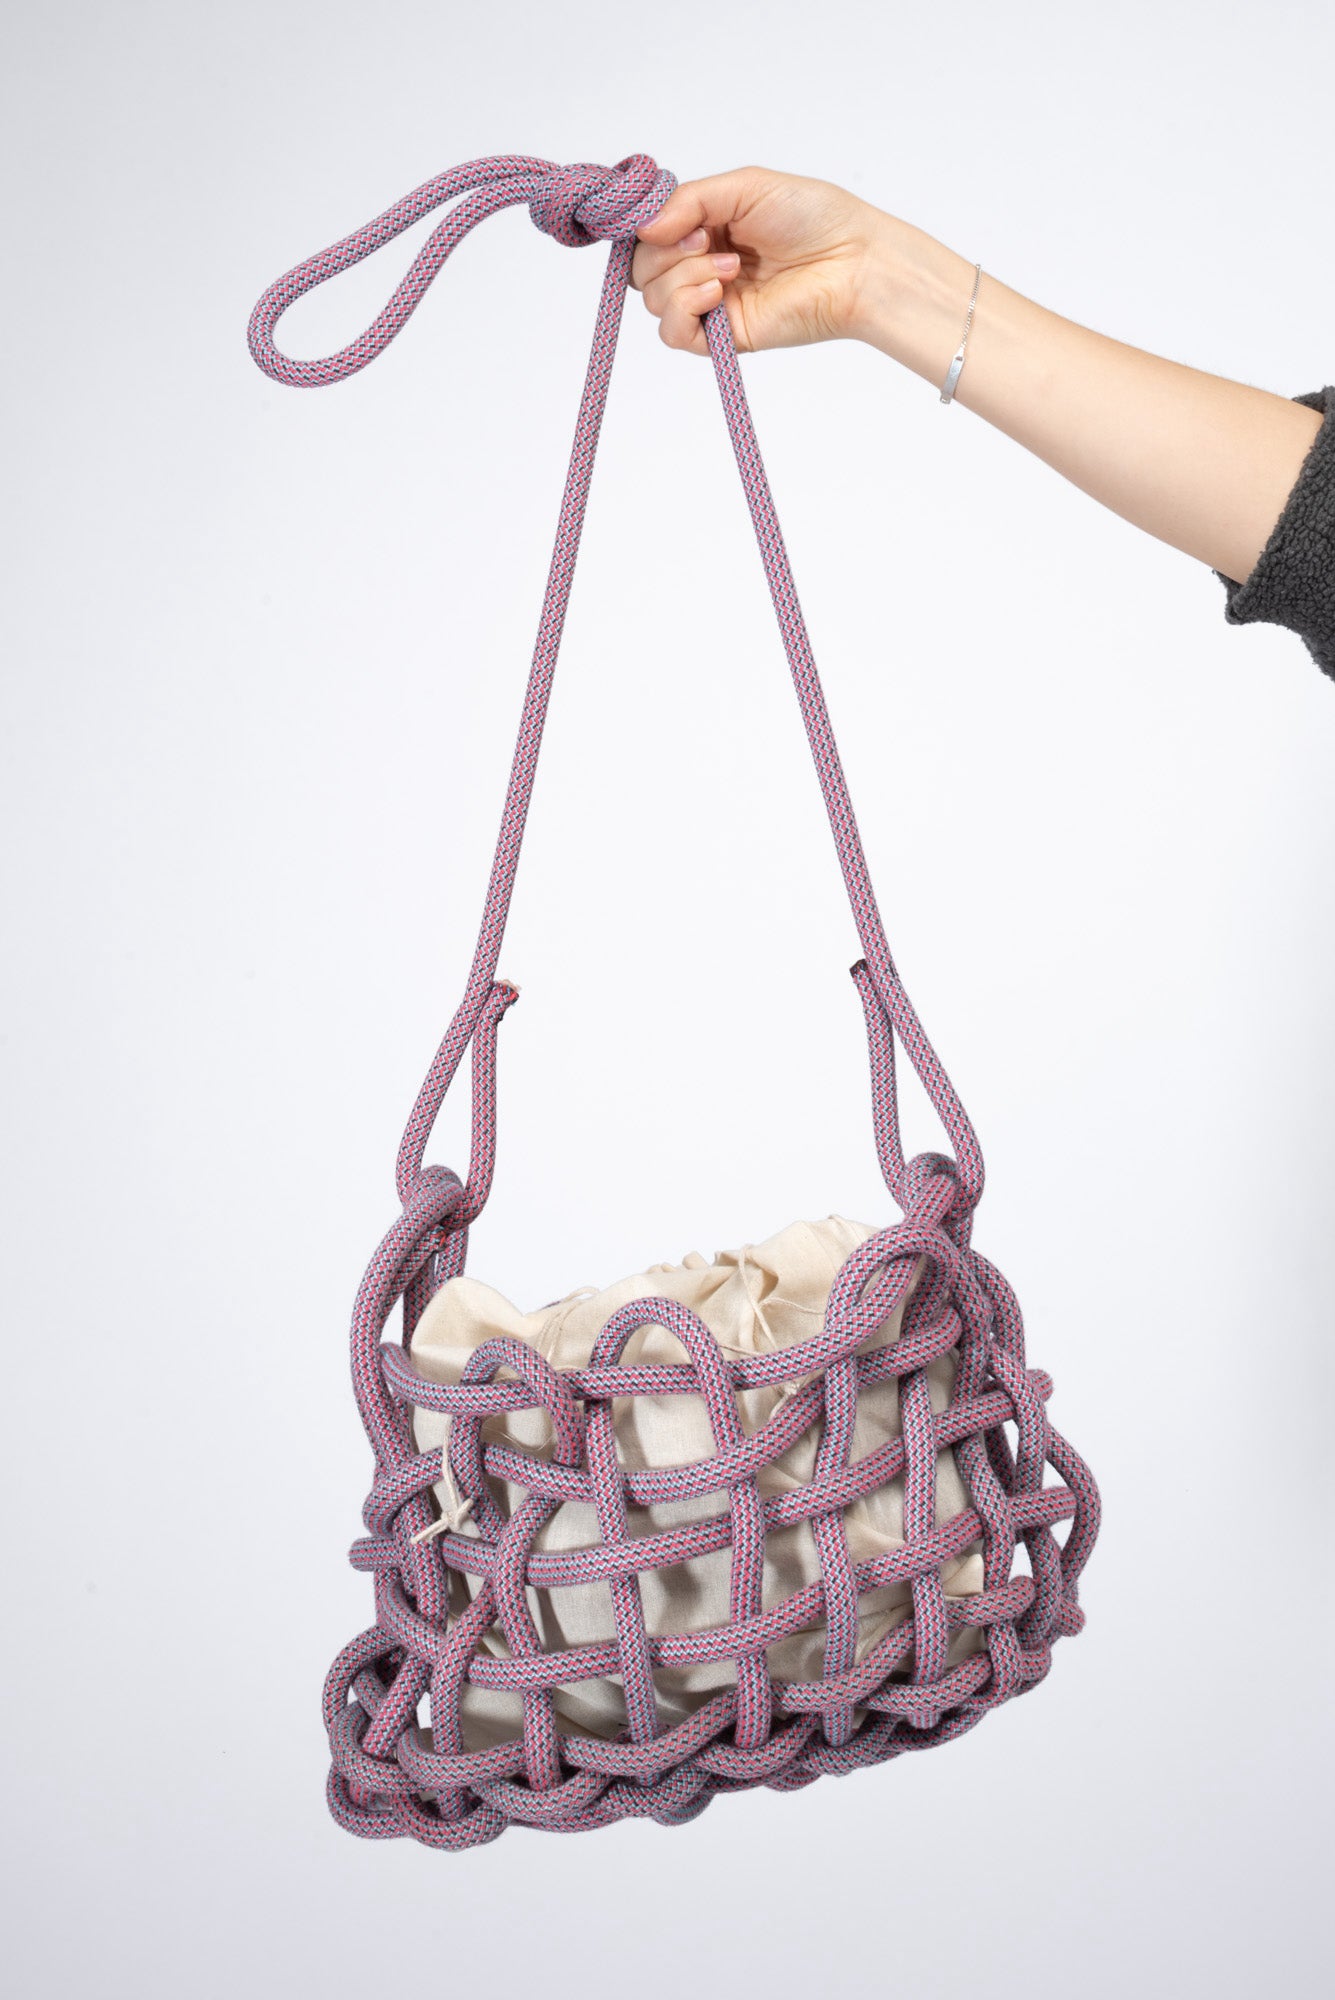 Clove Tasche by Lilli Sprunck